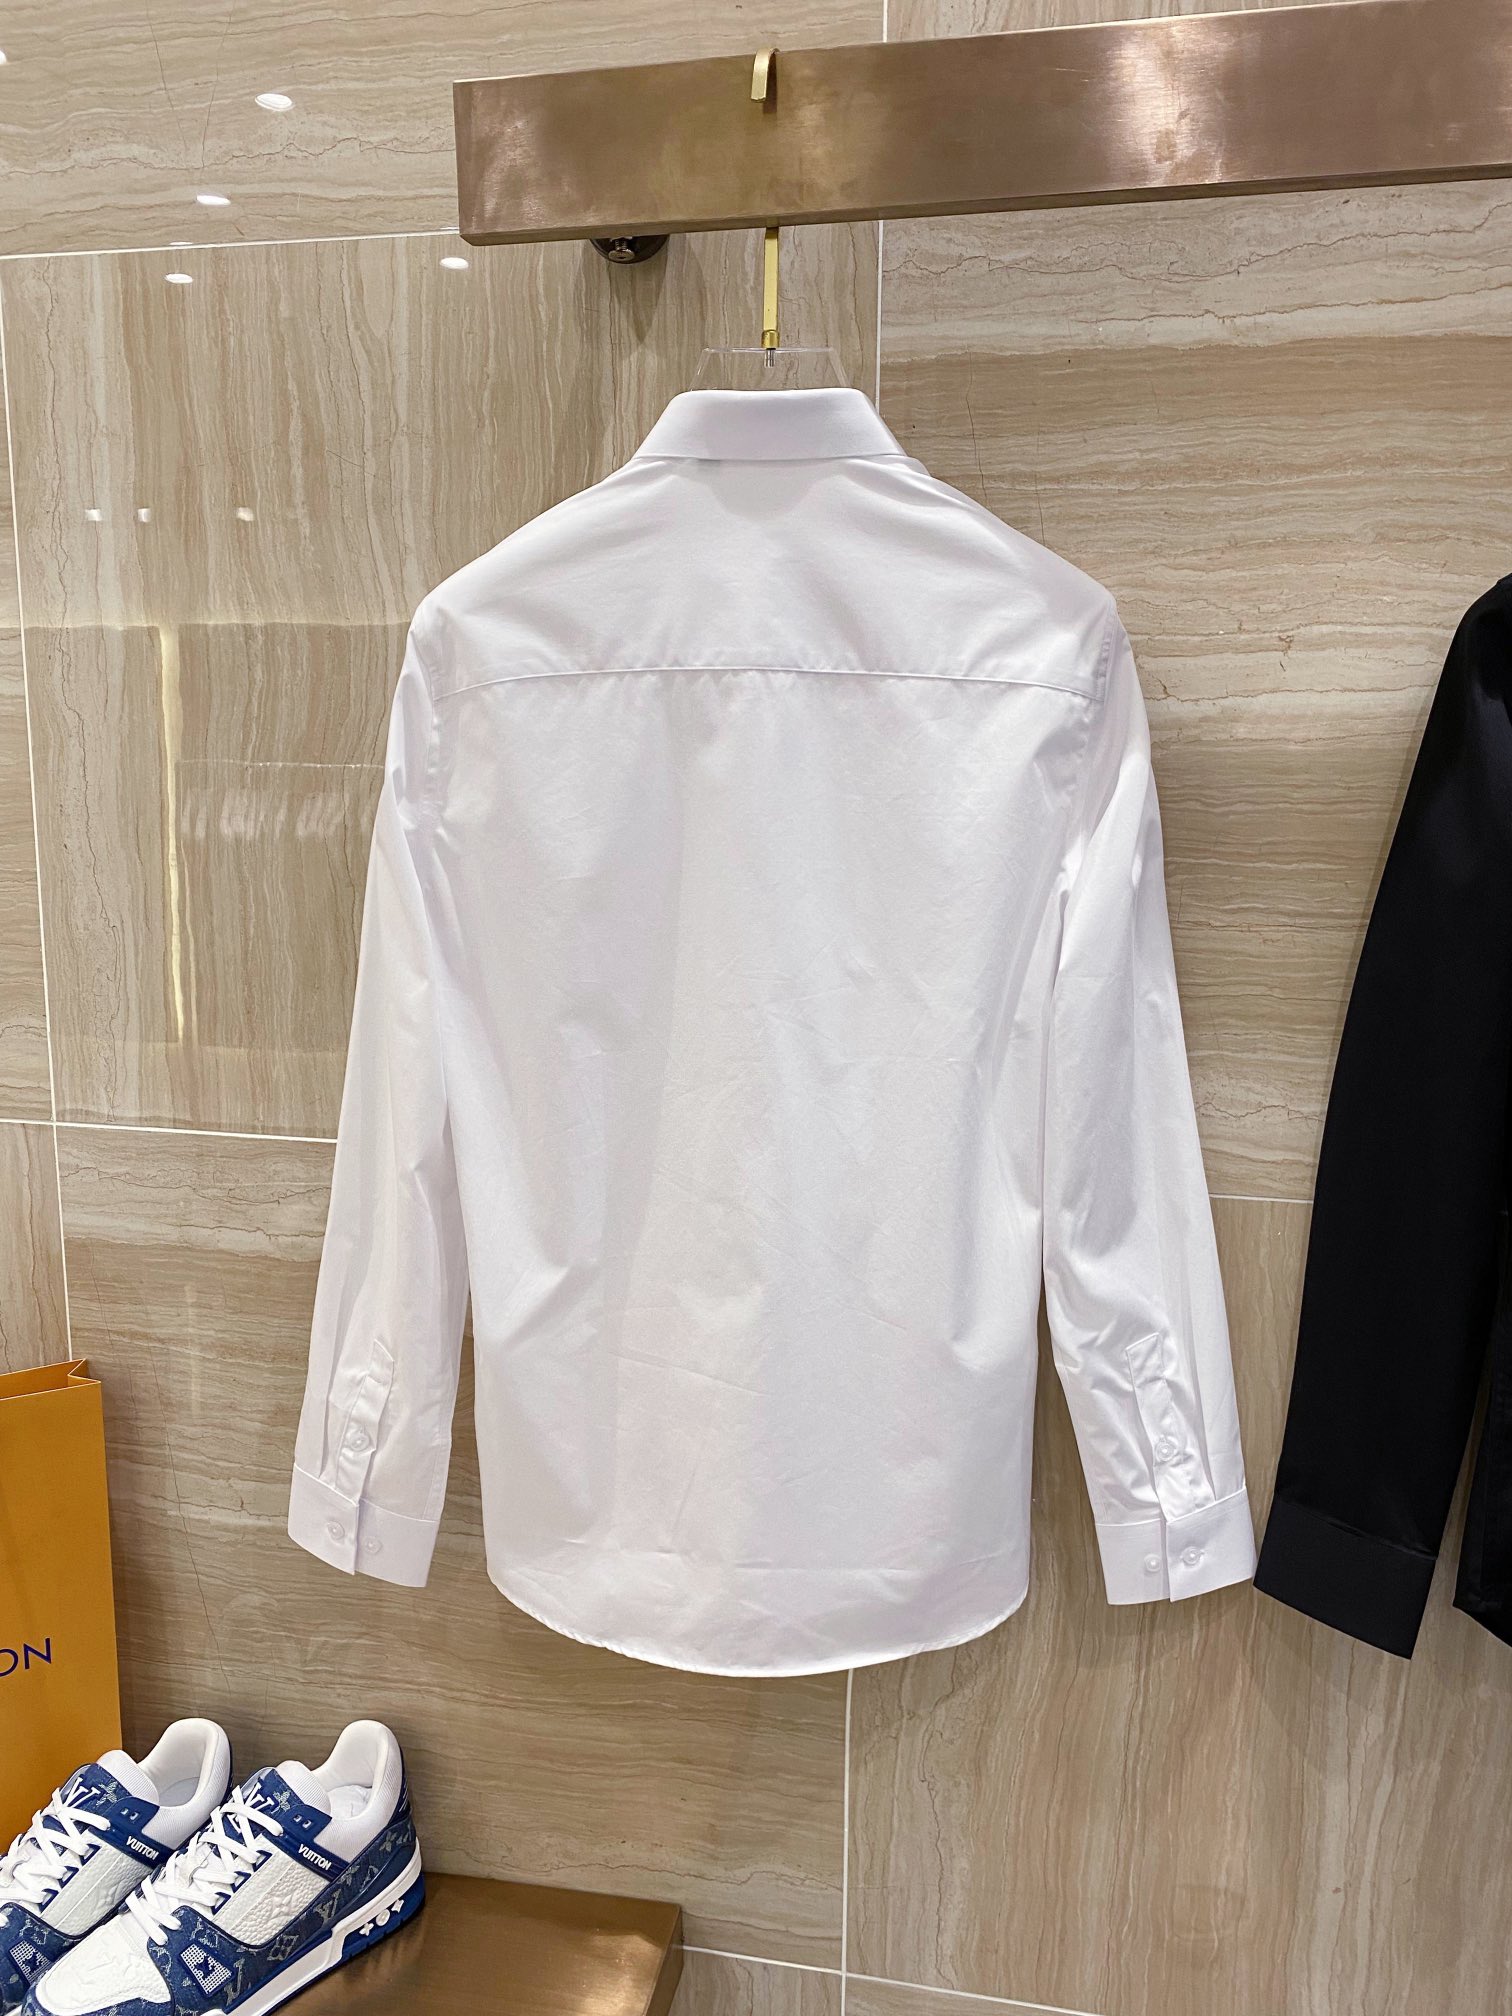 ヴェルサーチェ セットアップ偽物 シャツ トップス ビジネス 秋服 ゆったり 人気新作 シンプル 2色可選 ホワイト_3